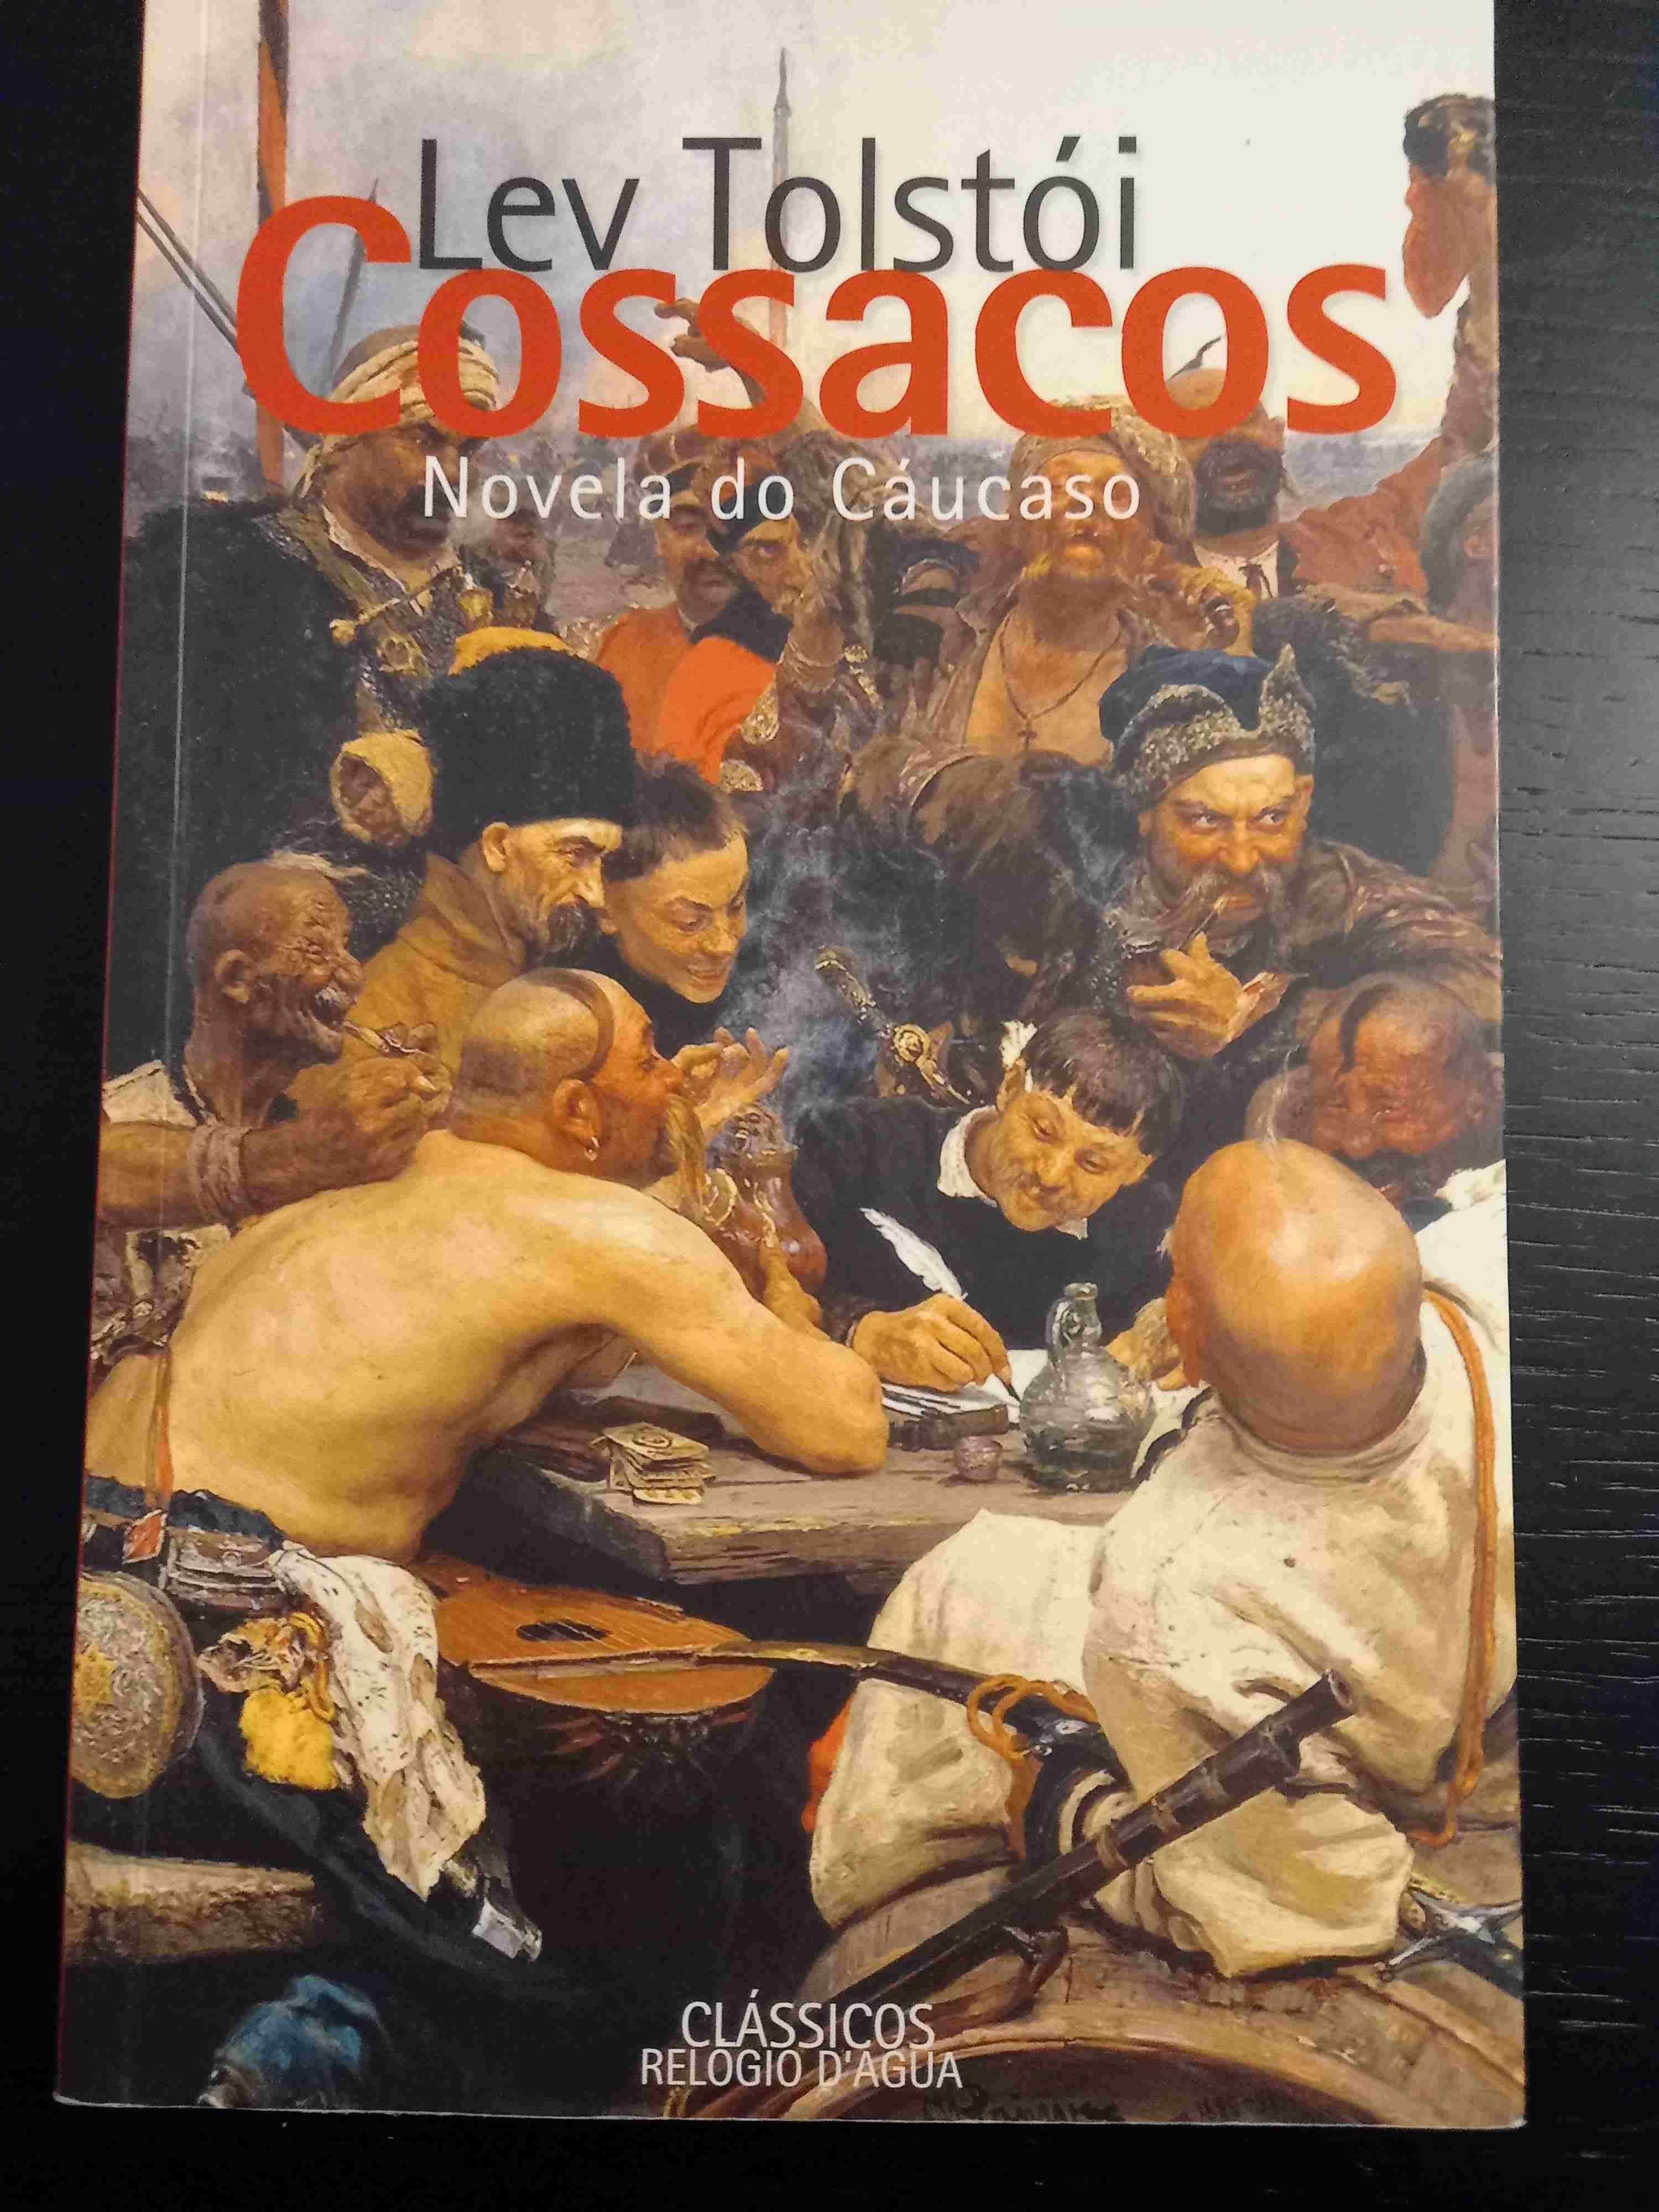 Os Cossacos e Ressurreição de Lev Tolstoi - 2 livros